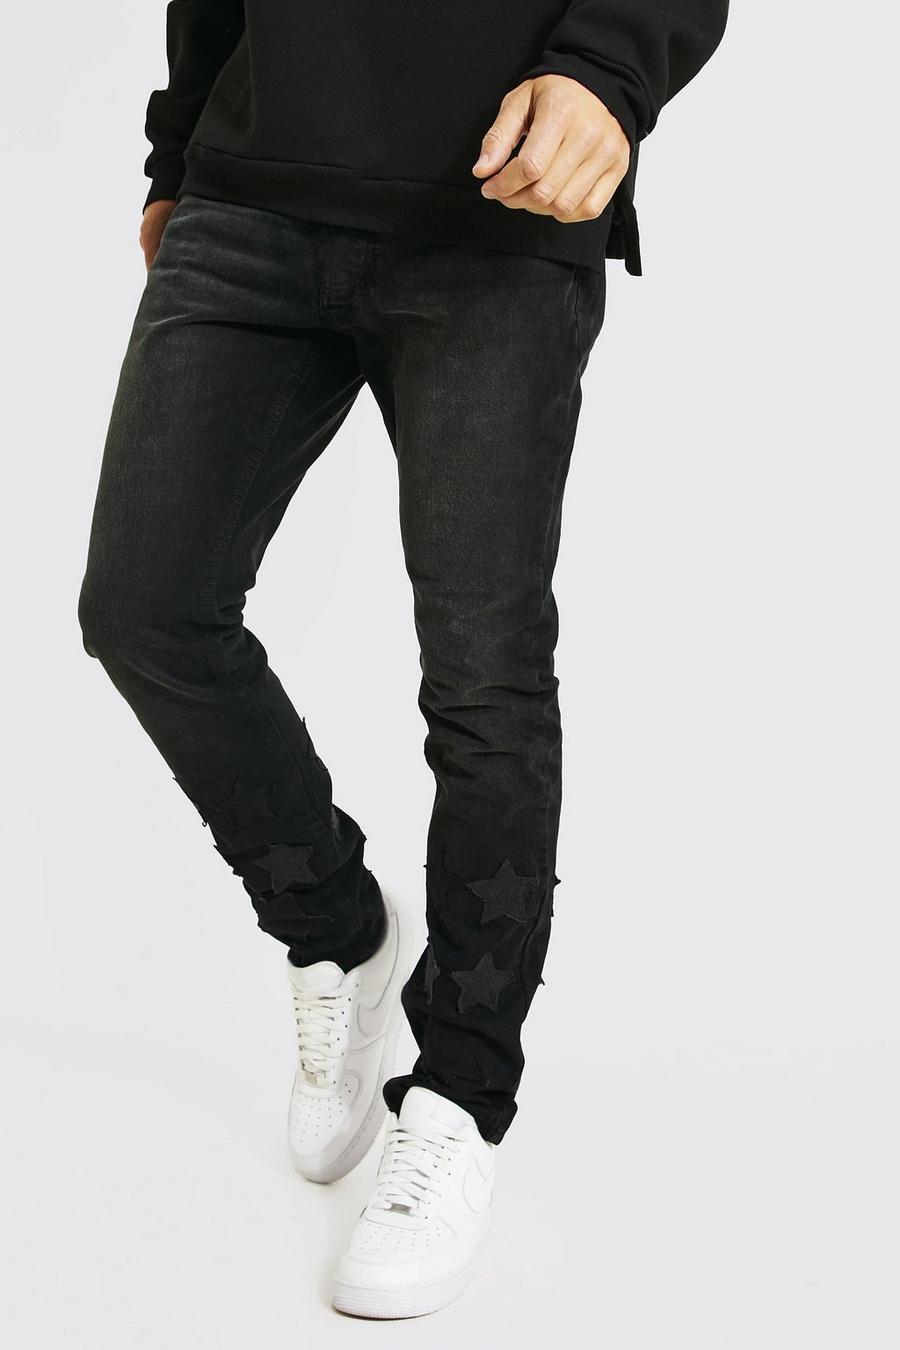 Jeans Tall Slim Fit effetto patchwork con applique a stella, Black nero